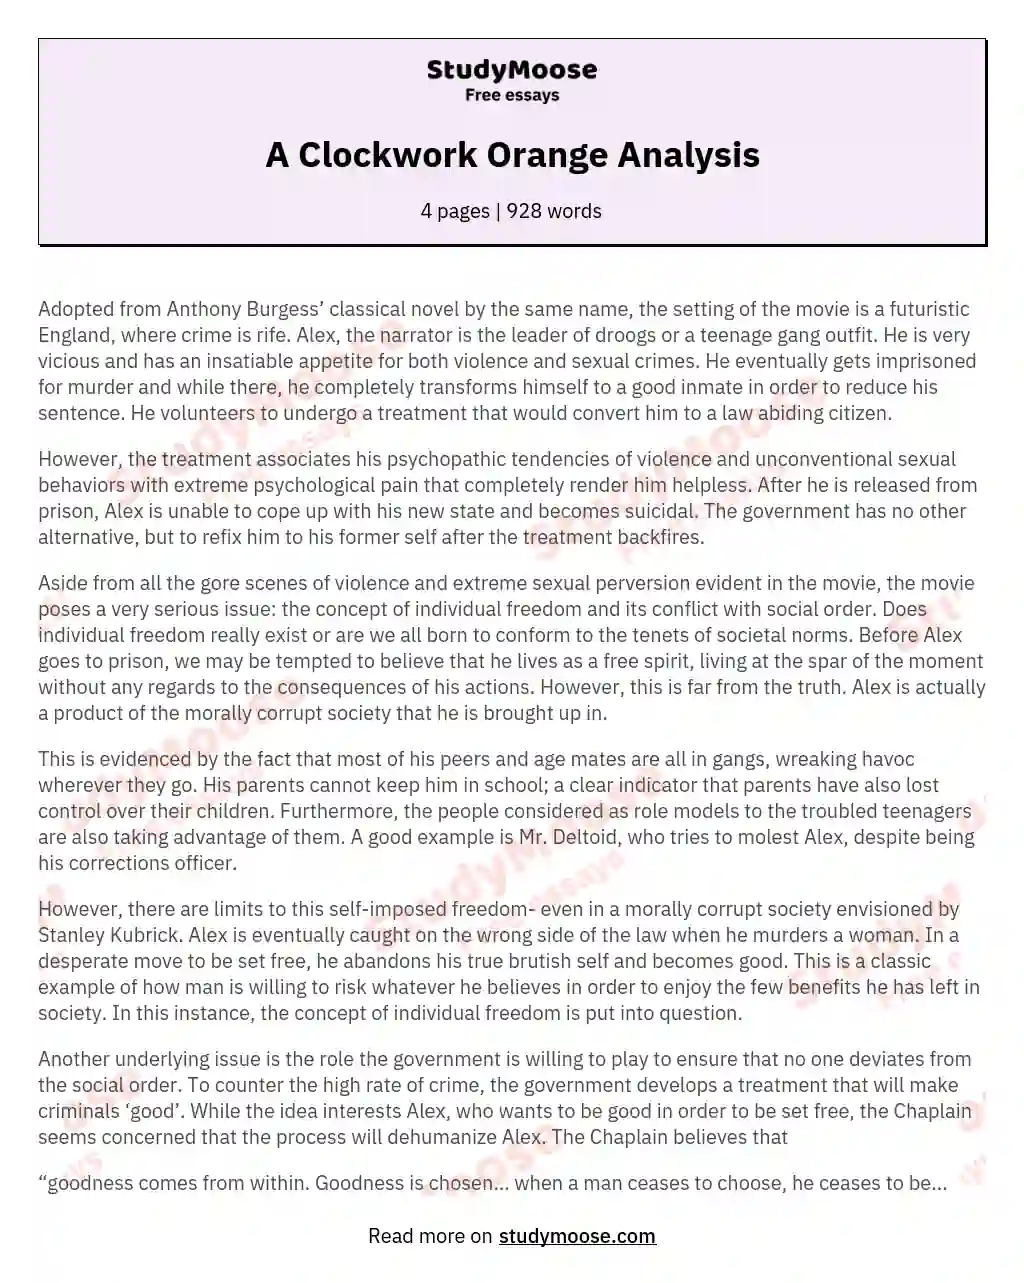 A Clockwork Orange Analysis essay